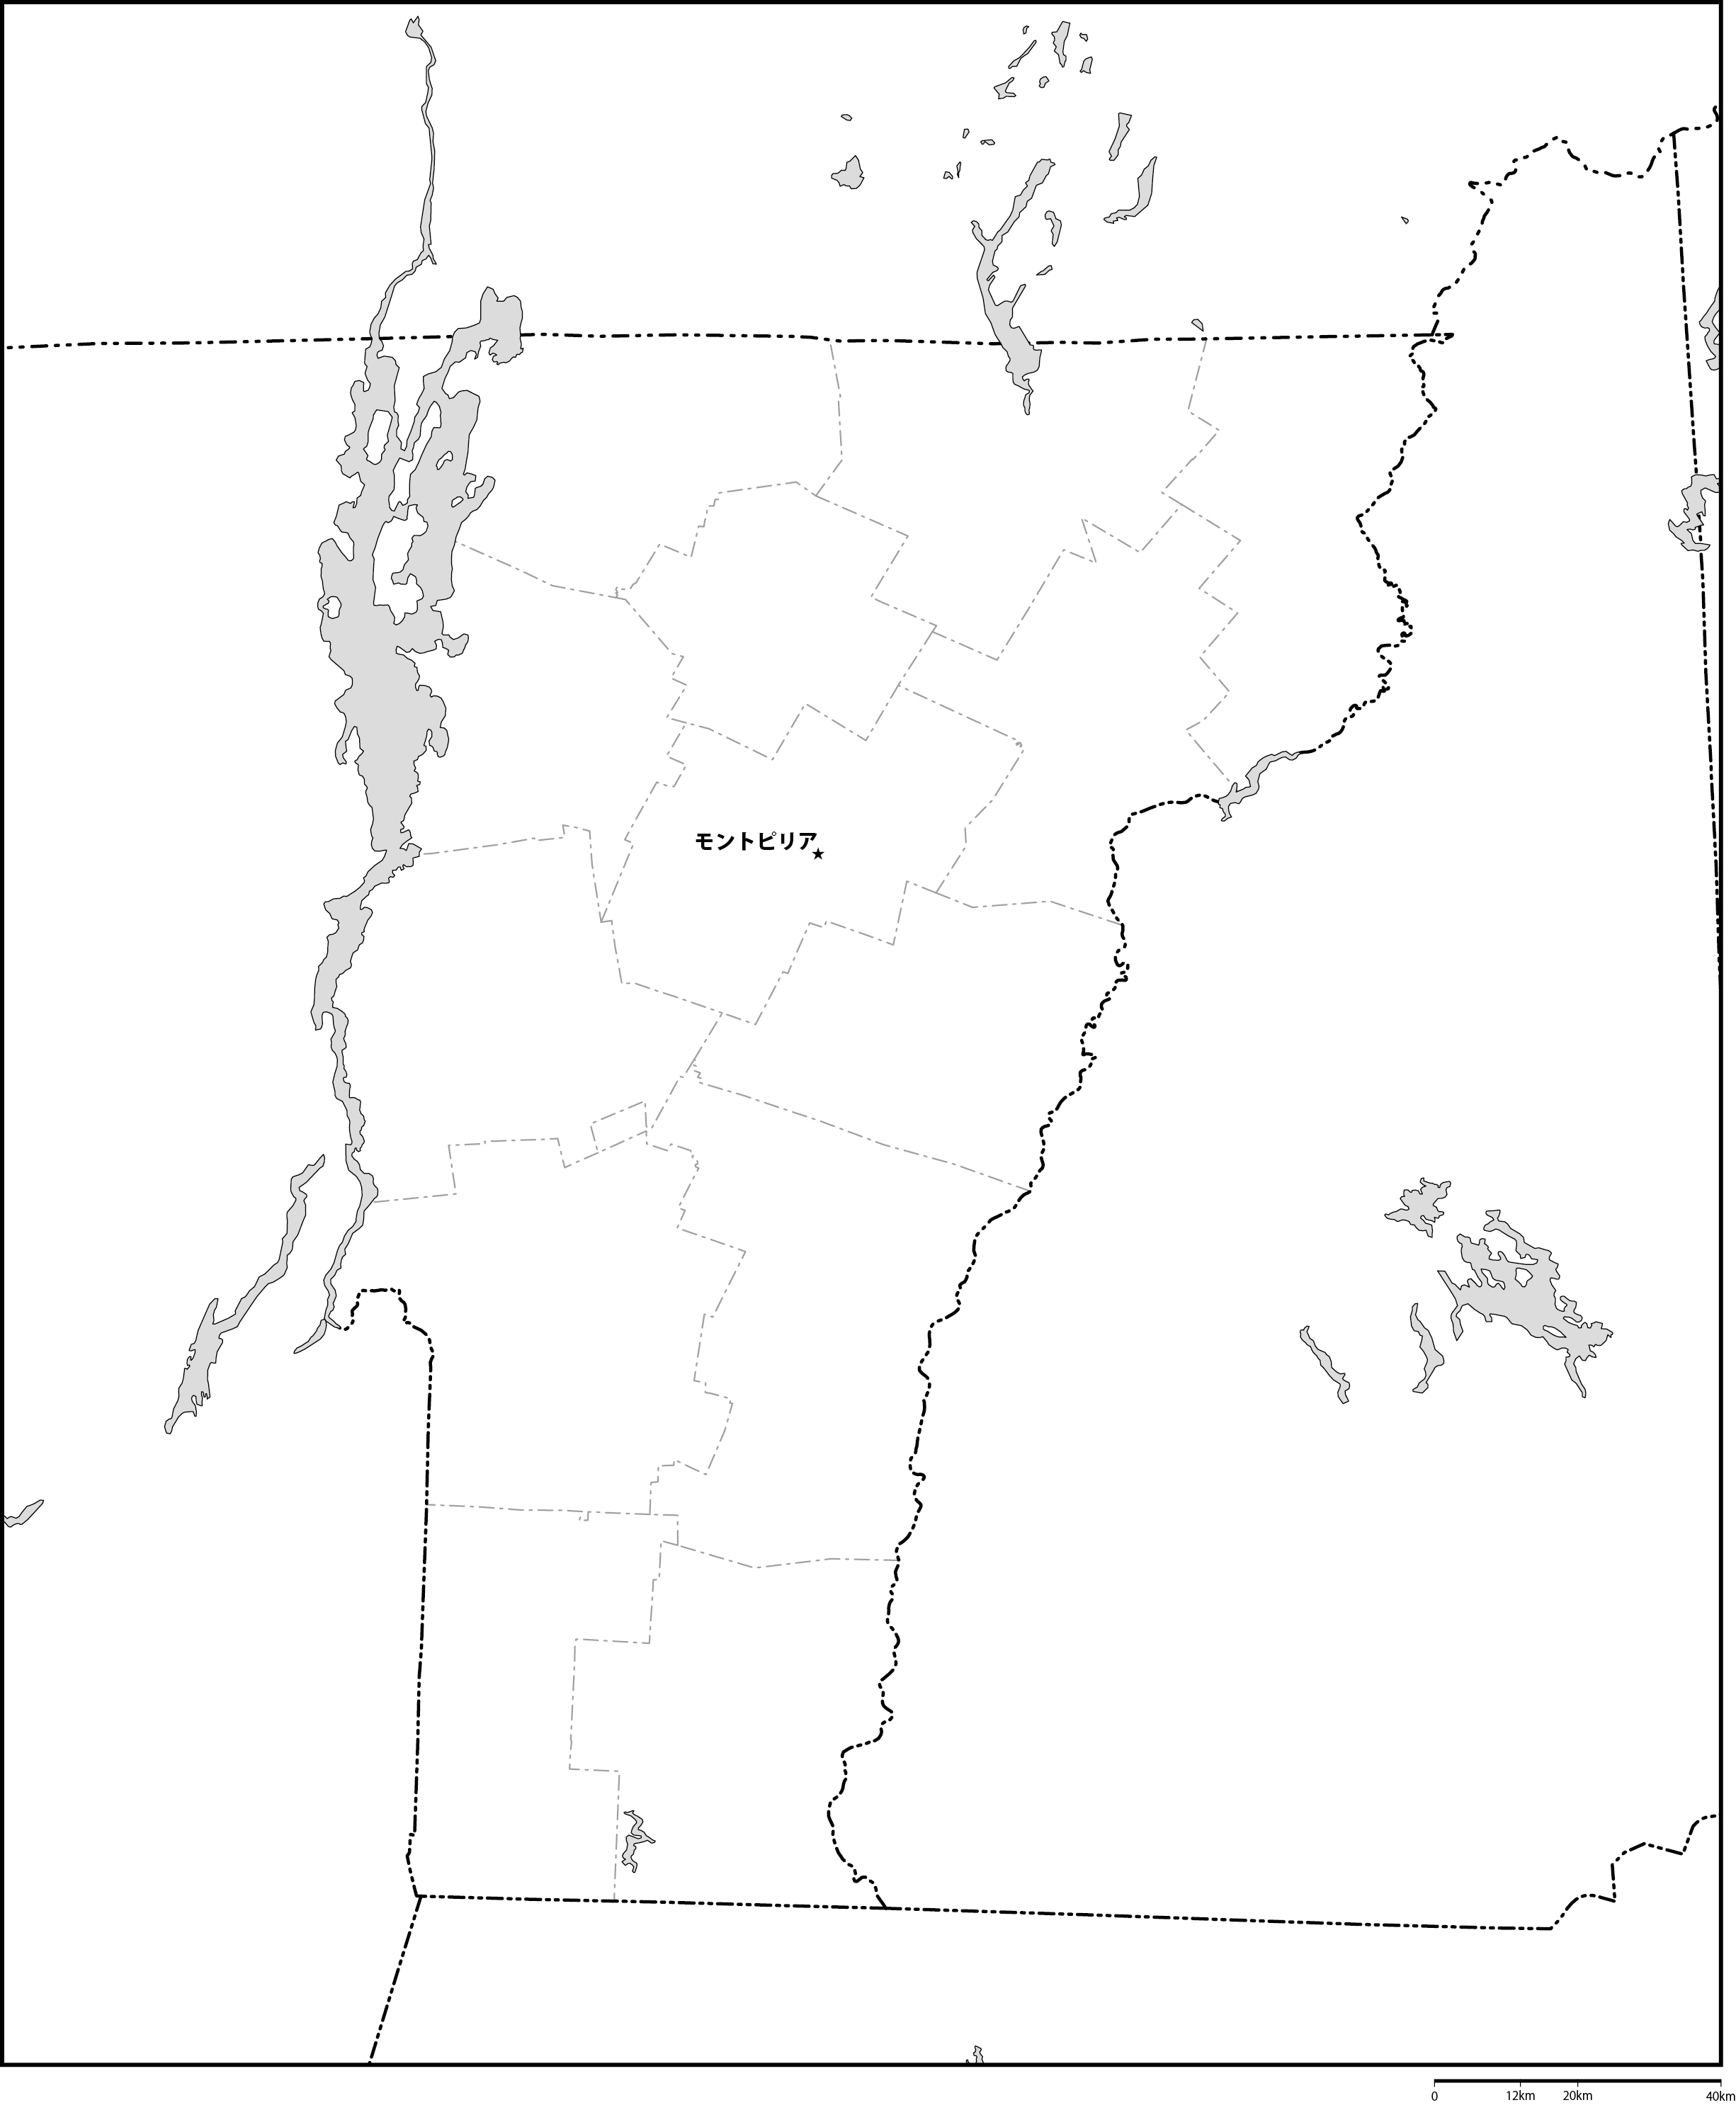 バーモント州郡分け白地図州都あり(日本語)フリーデータの画像